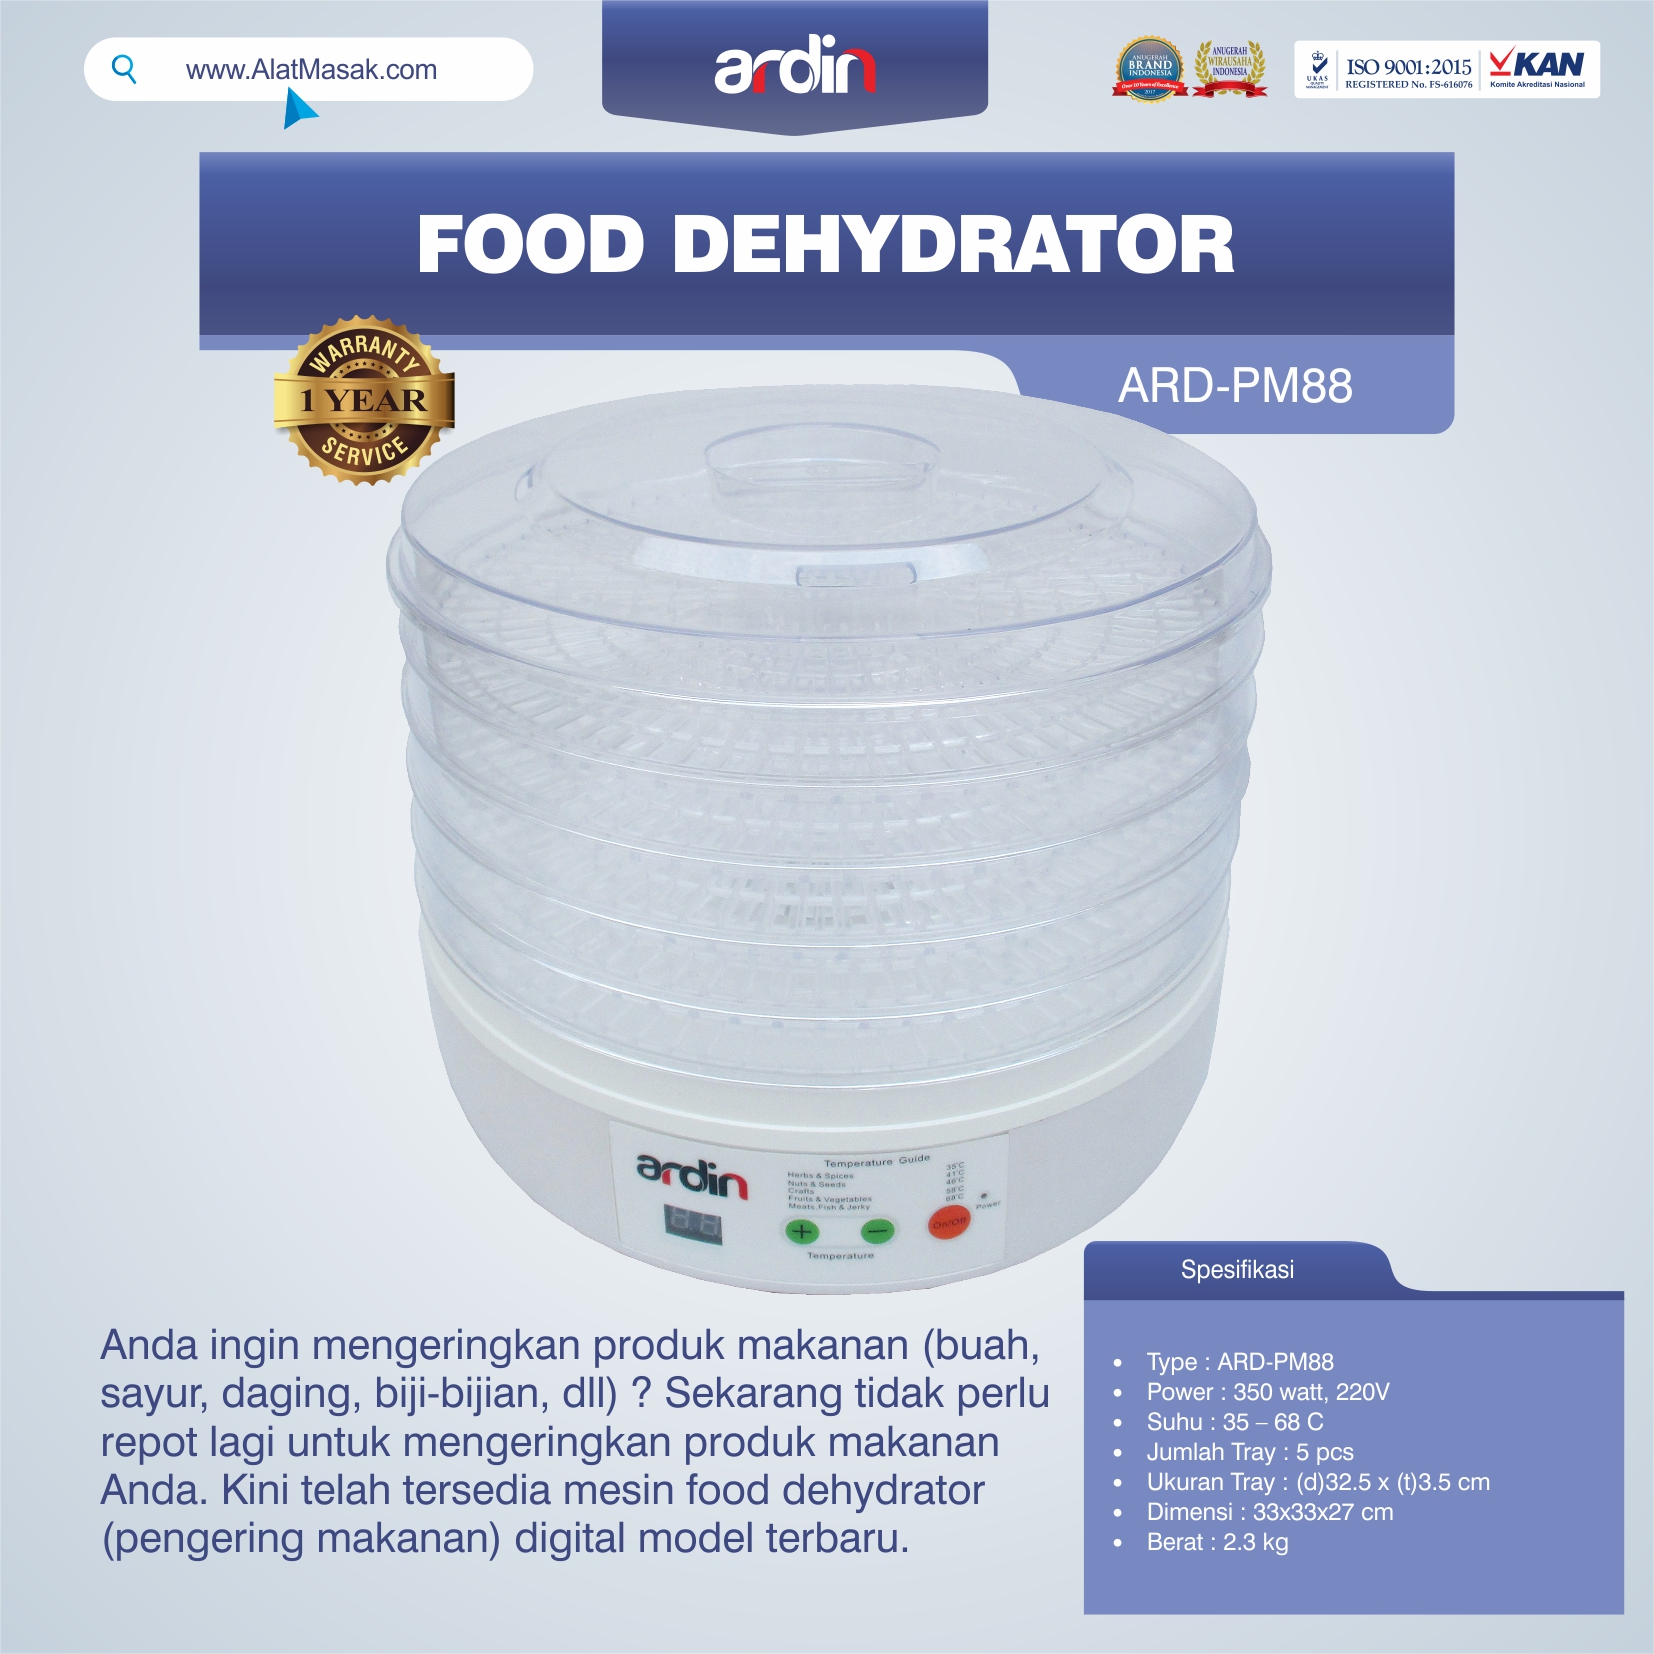 Jual Food Dehydrator ARD-PM88 di Bali